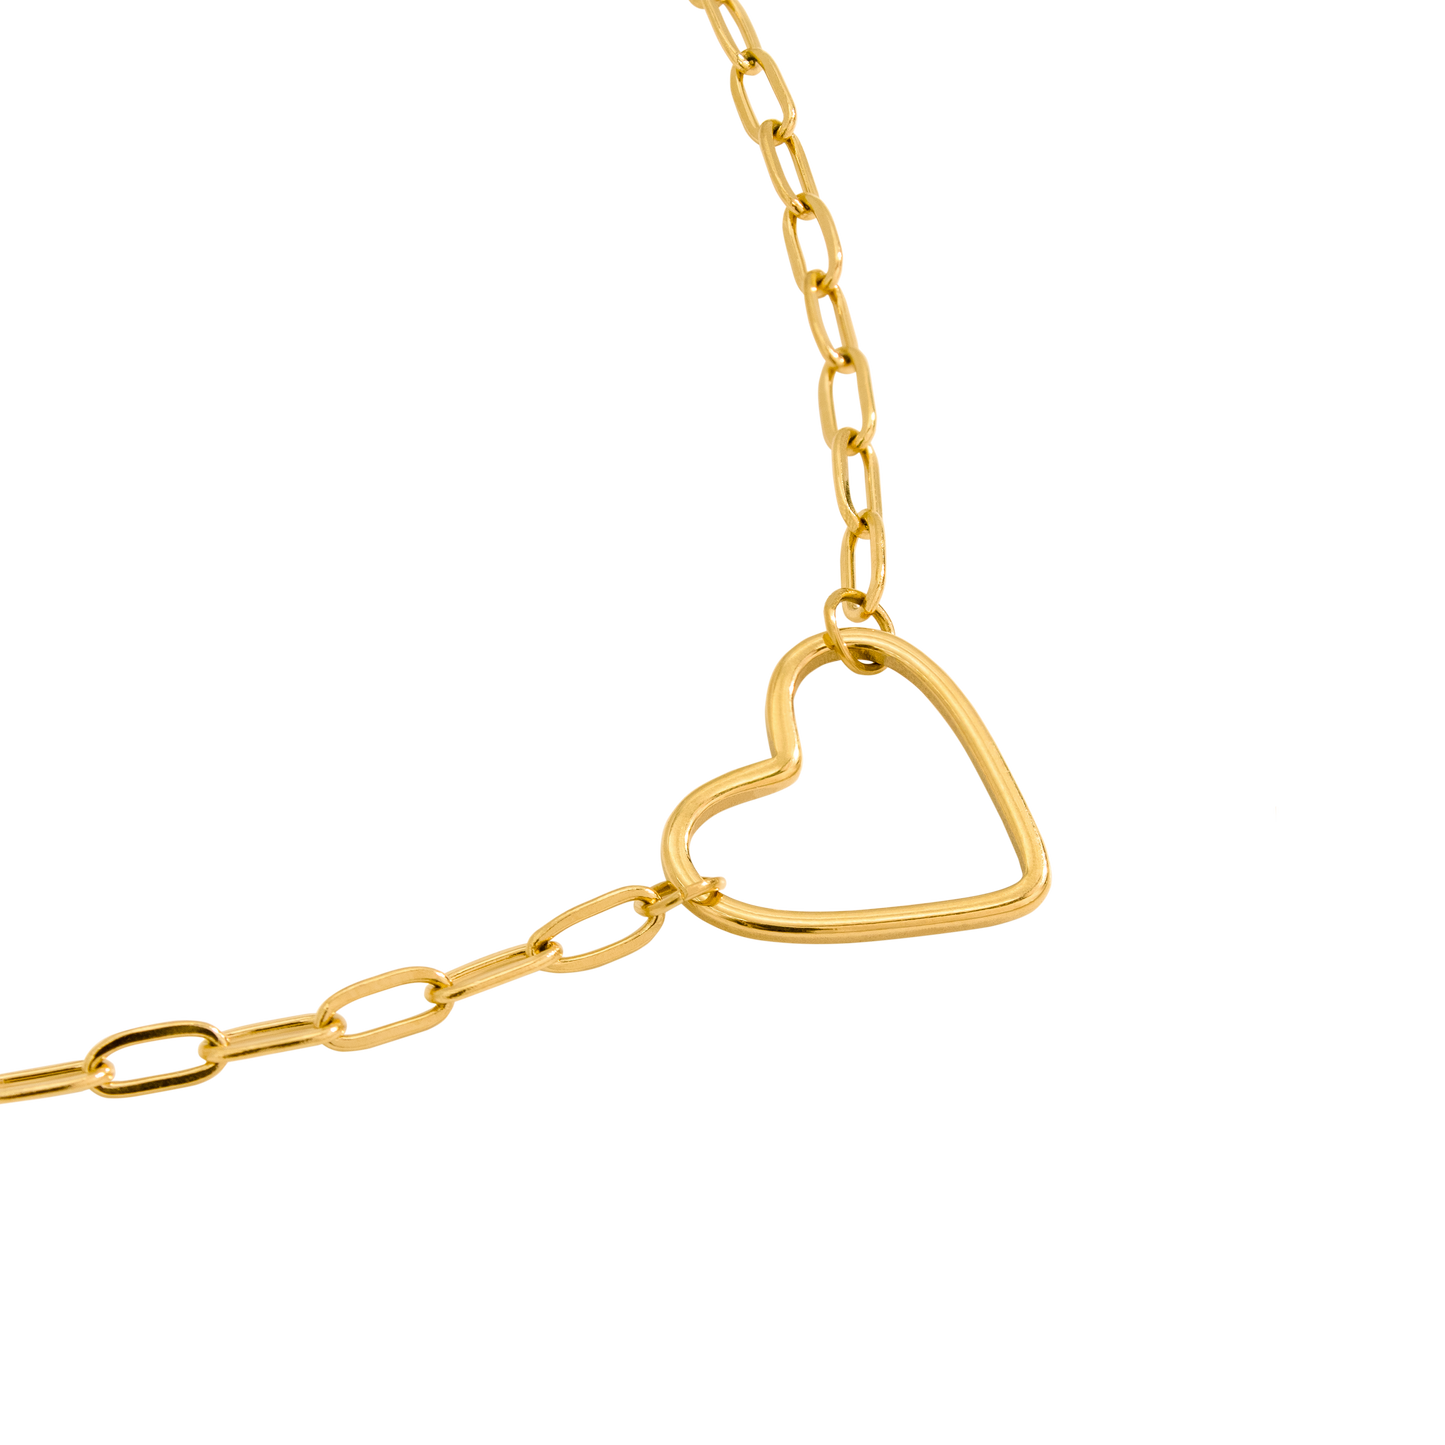 Loving Heart Bracelet Gold